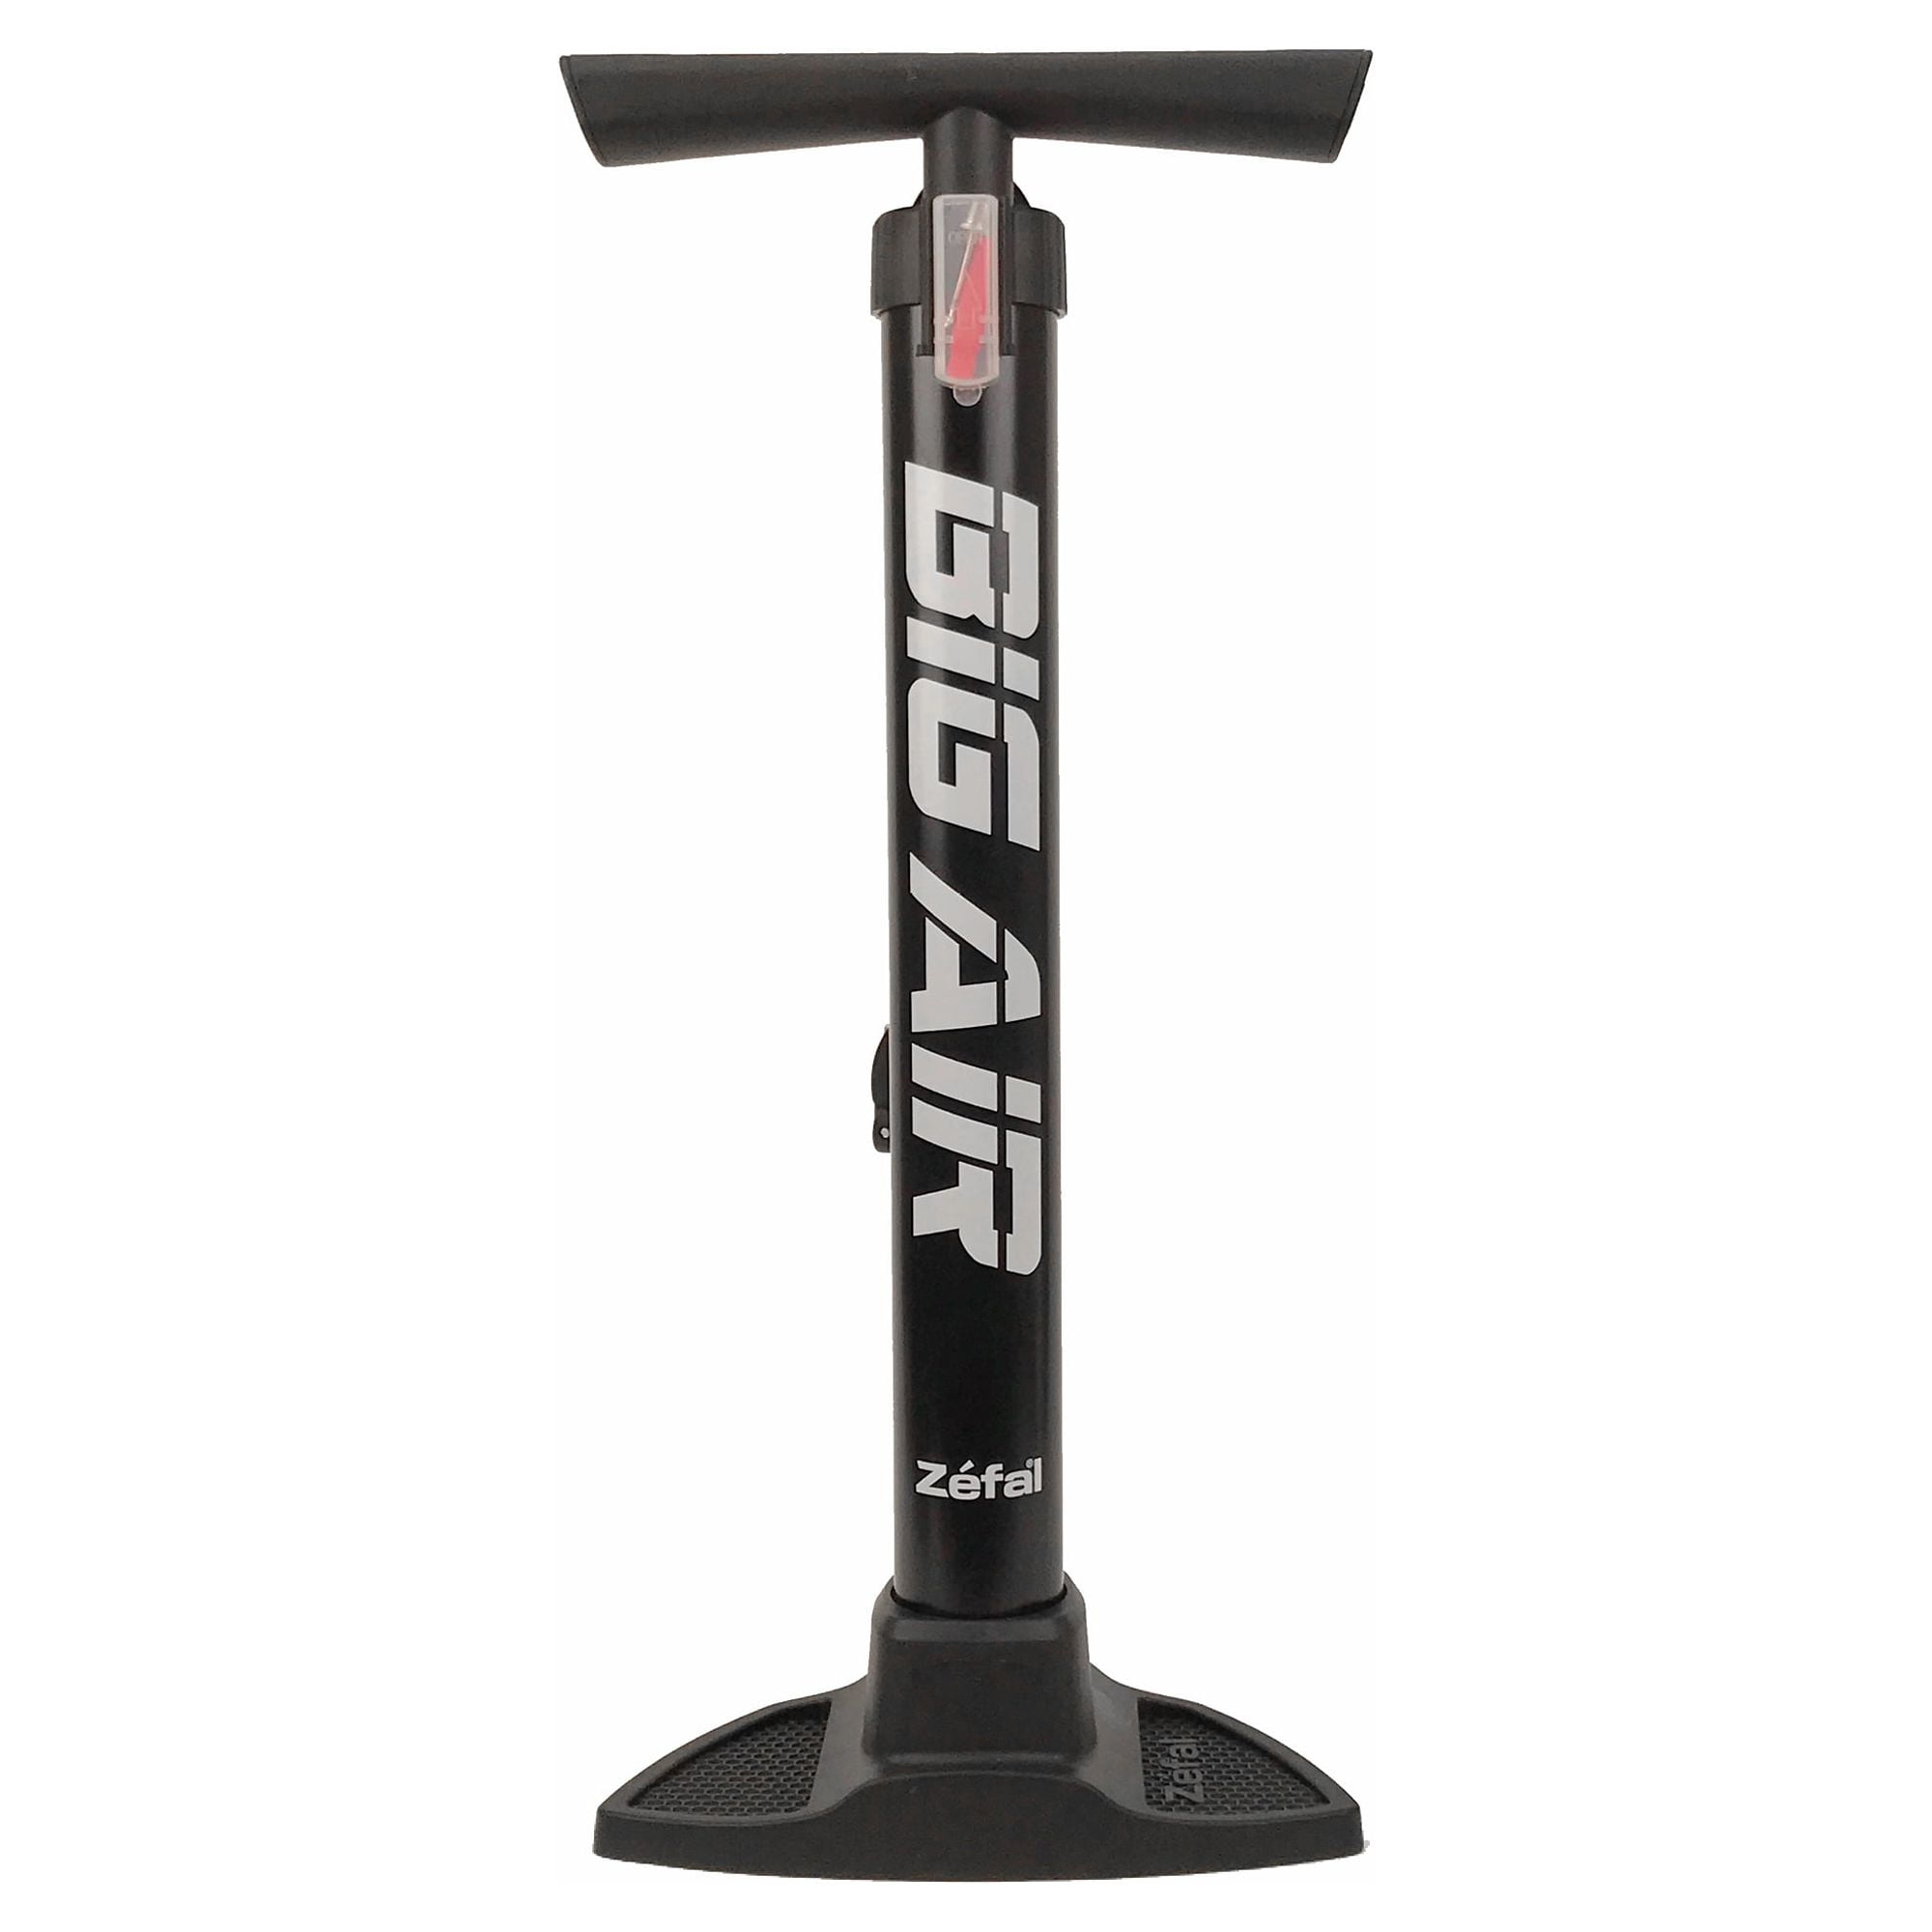 Zefal Big Air Heavy Duty Bicycle Floor Pump - Super Fast Fill